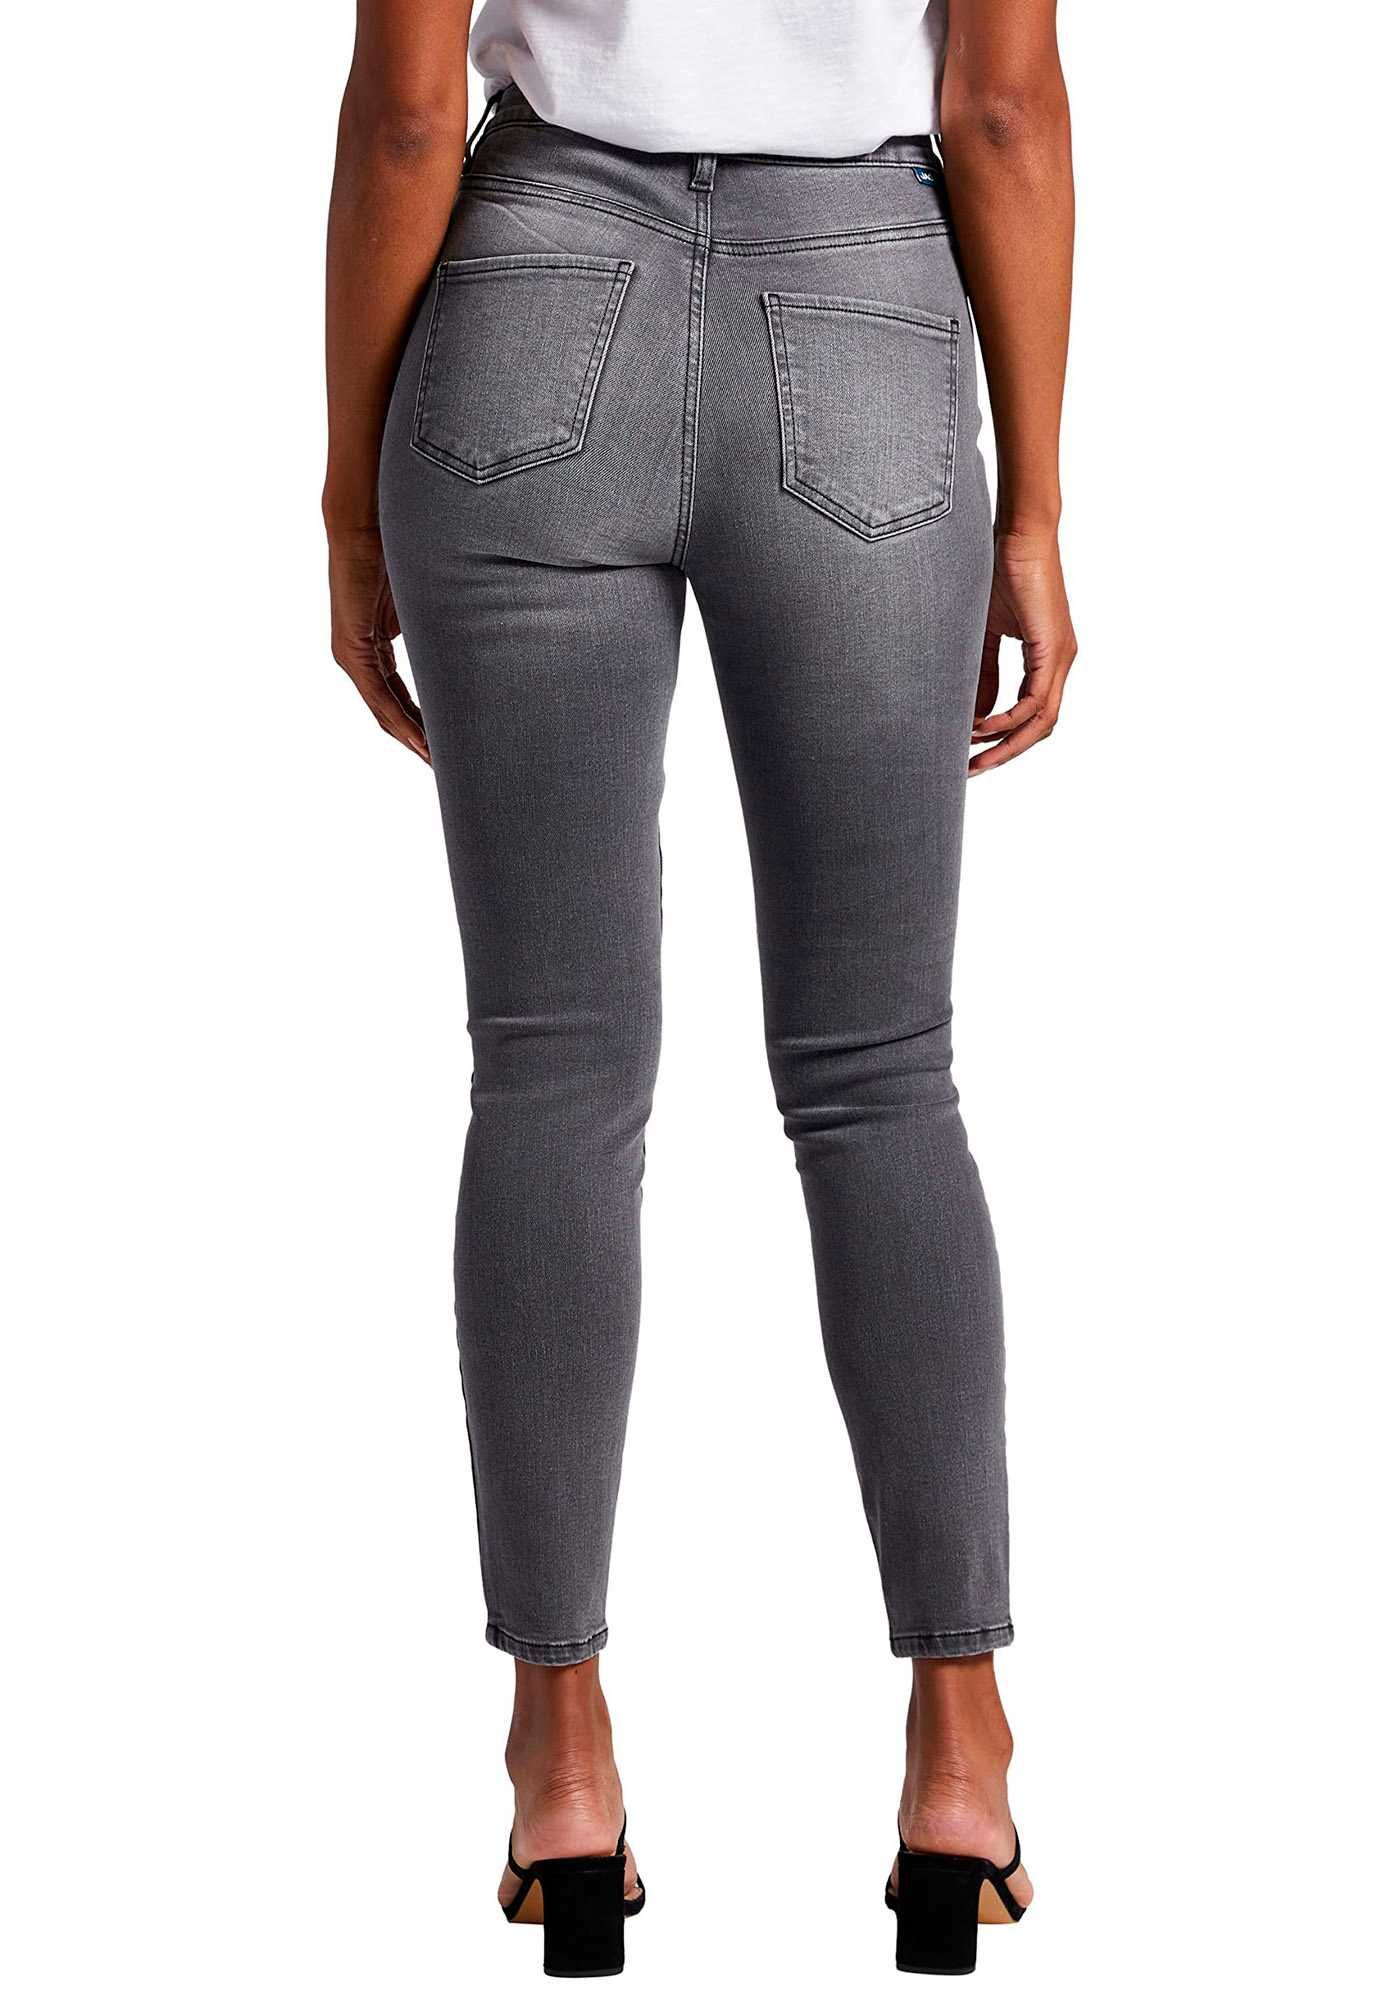 Джинсы женские Jag Jeans, Viola на высокий рост США оригинал новые